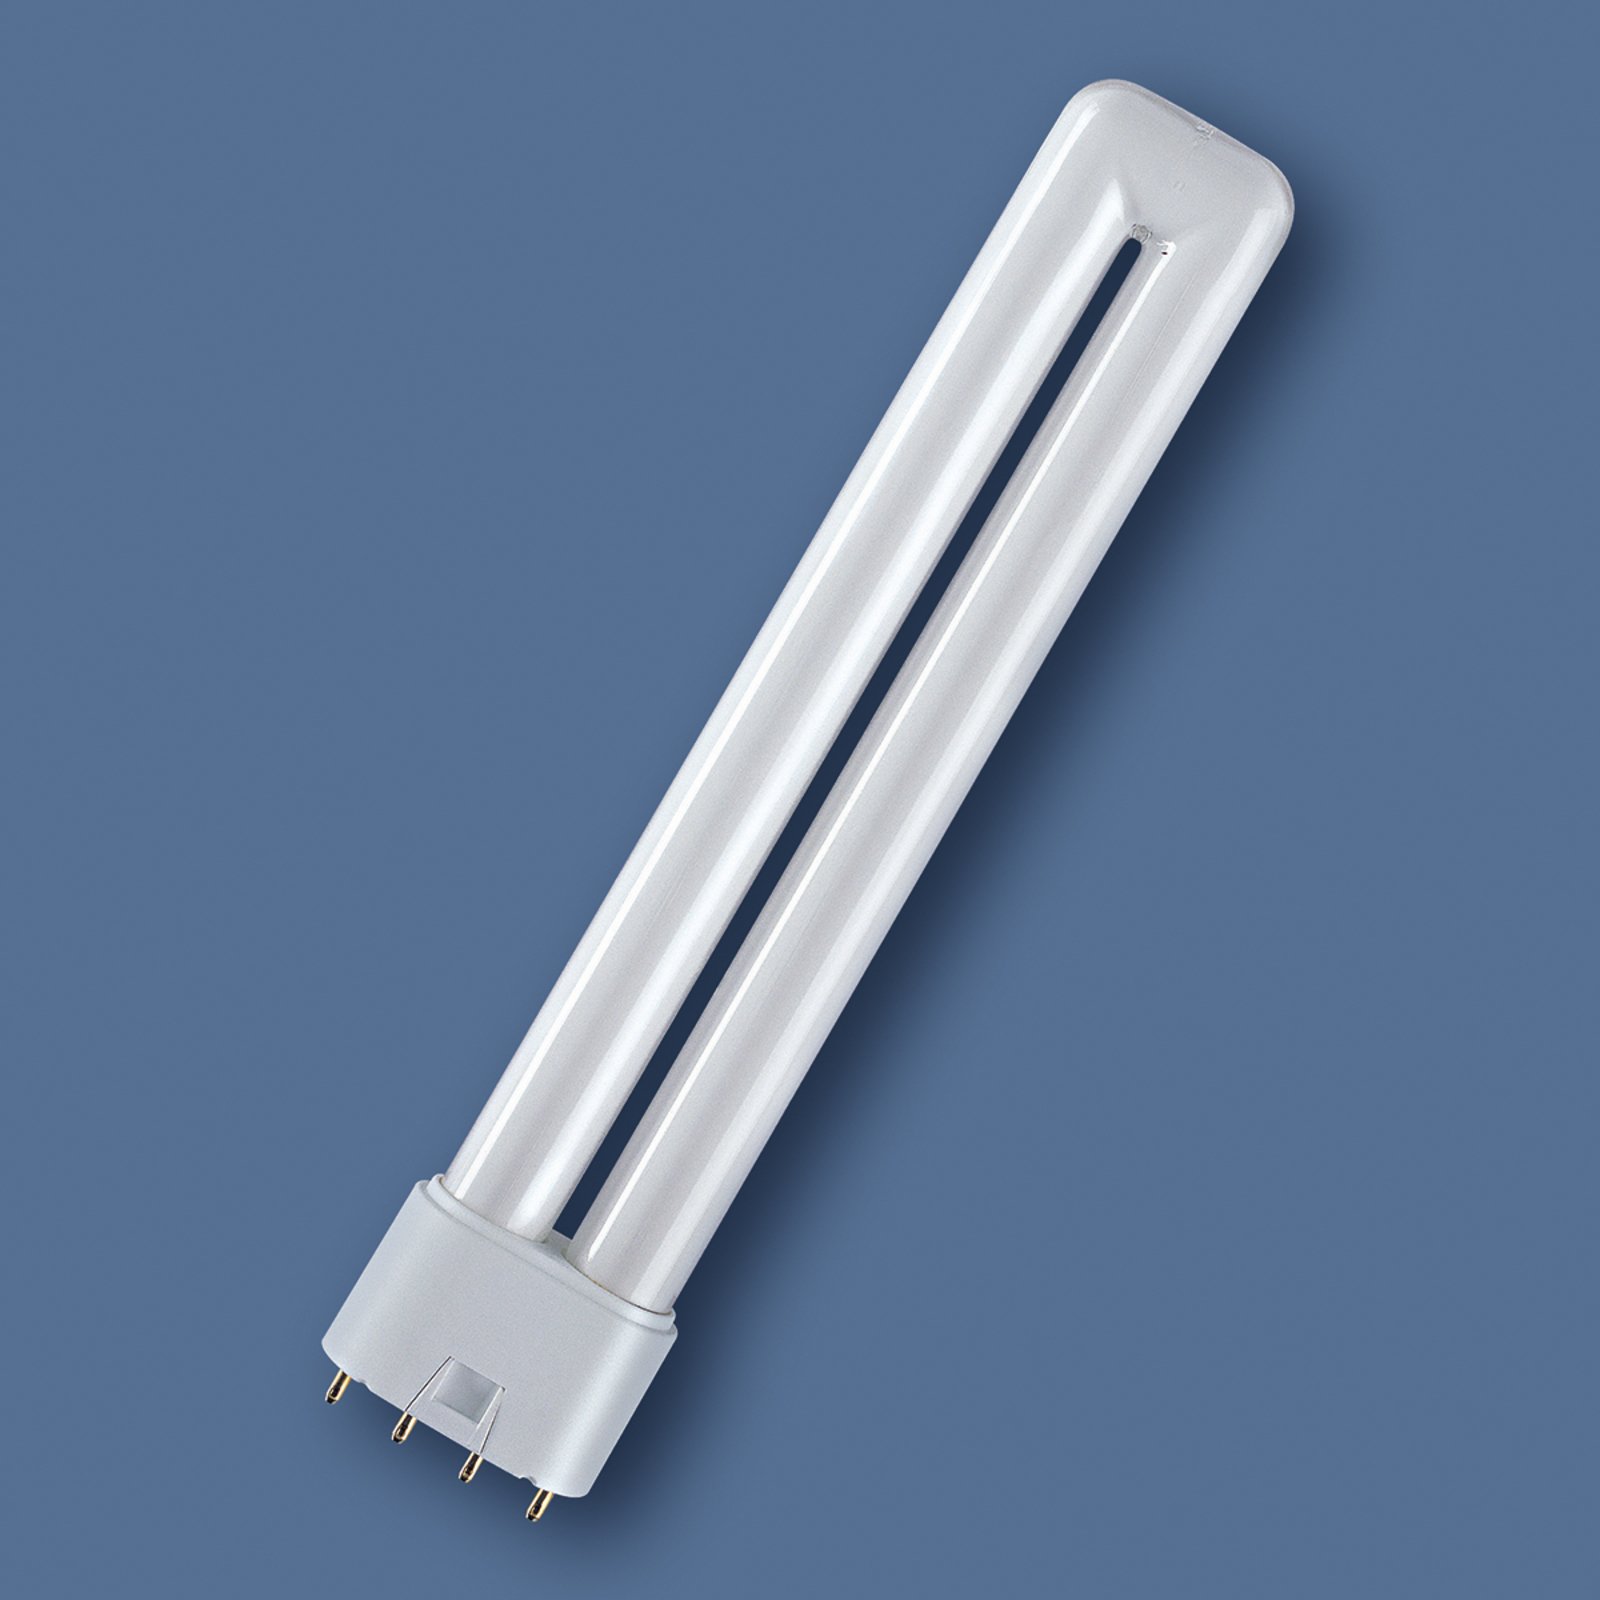 Bombilla fluorescente compacta Dulux L 2G11 18W830